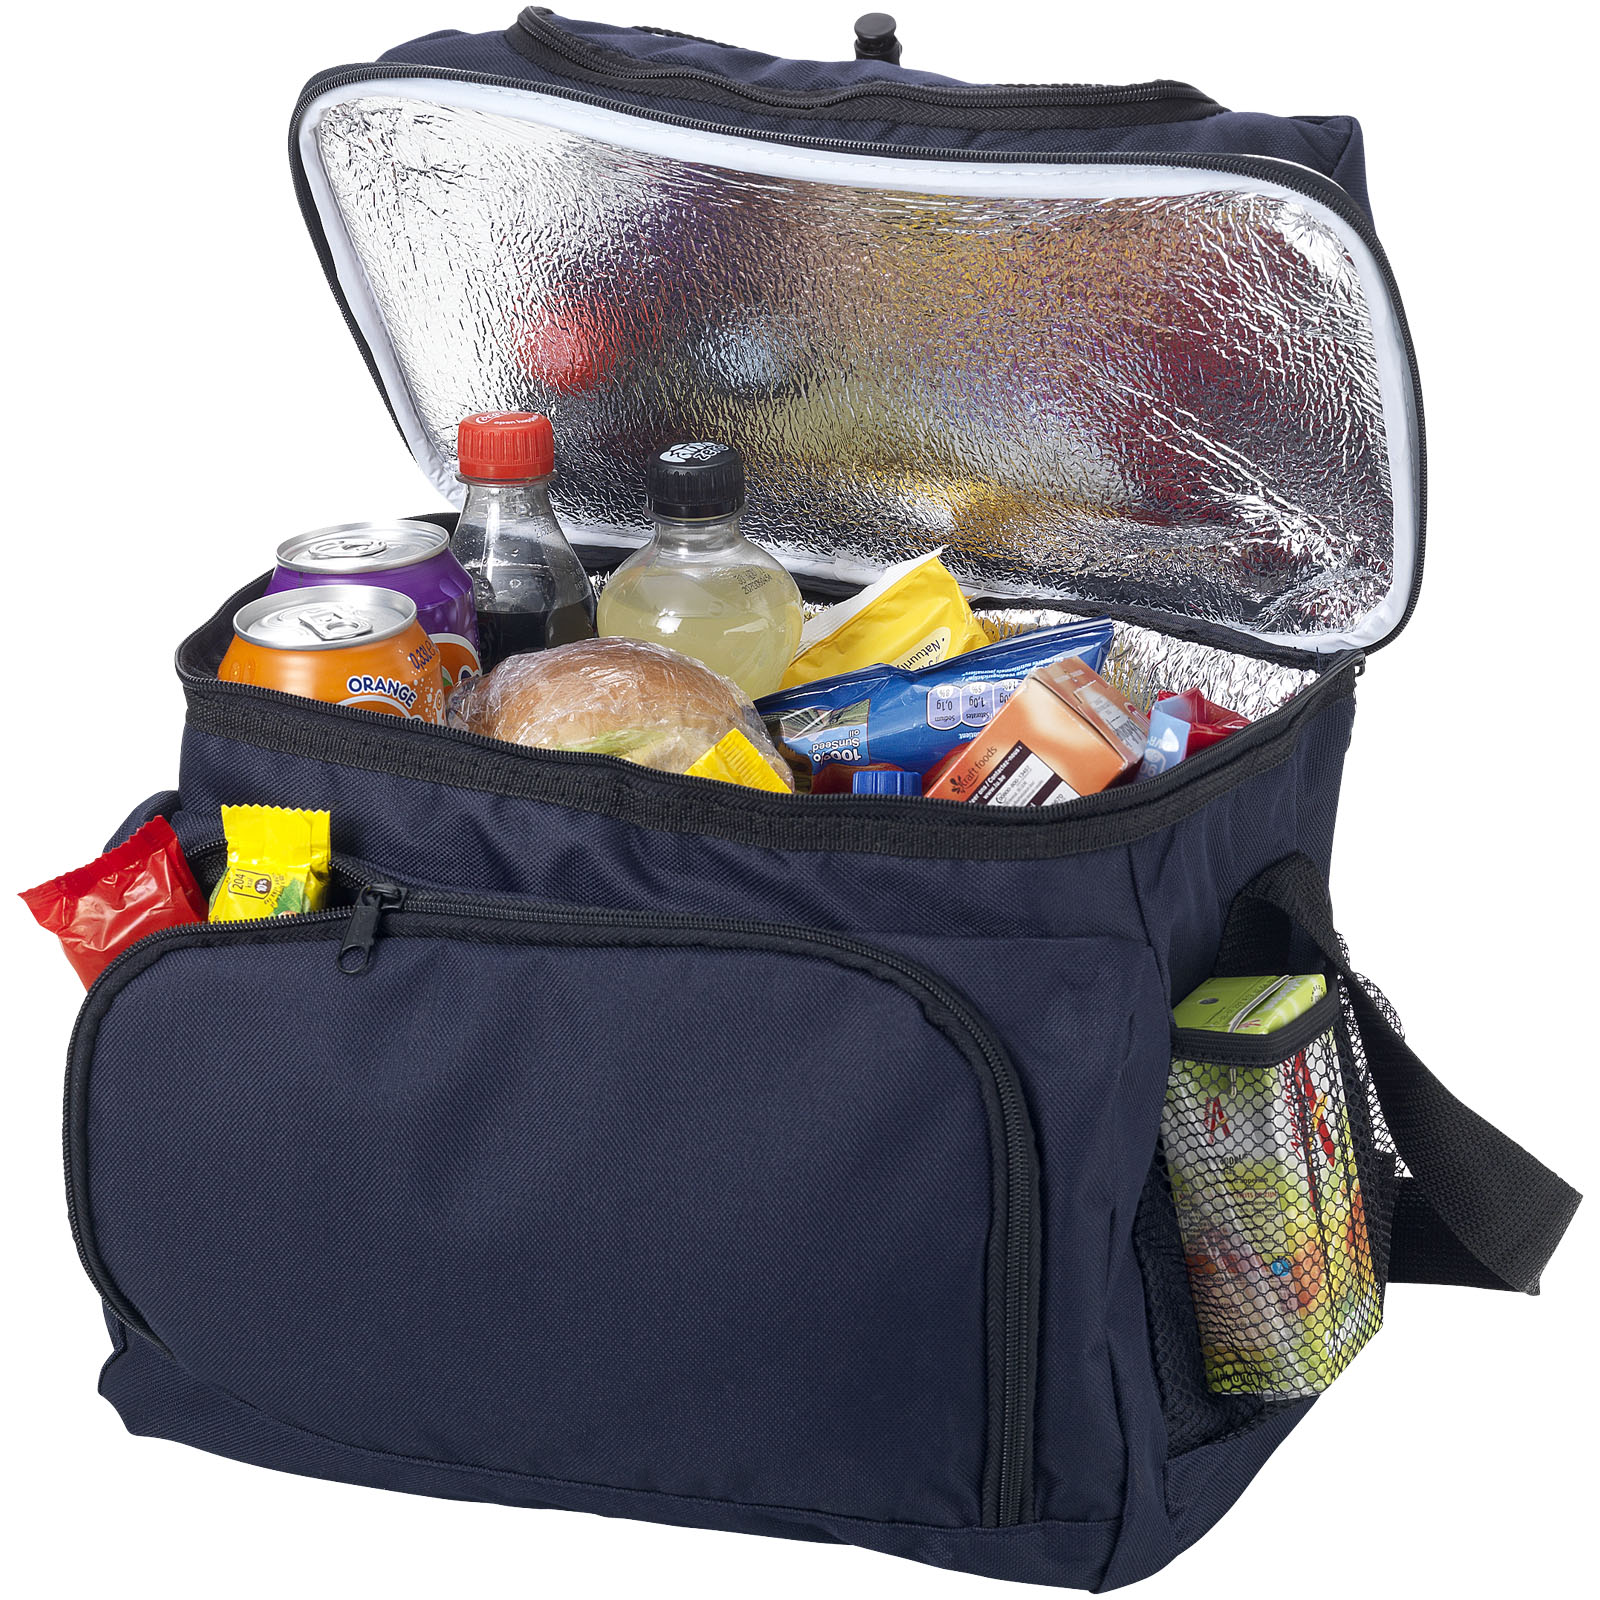 Snack Storage Cooler Bag - Haversham